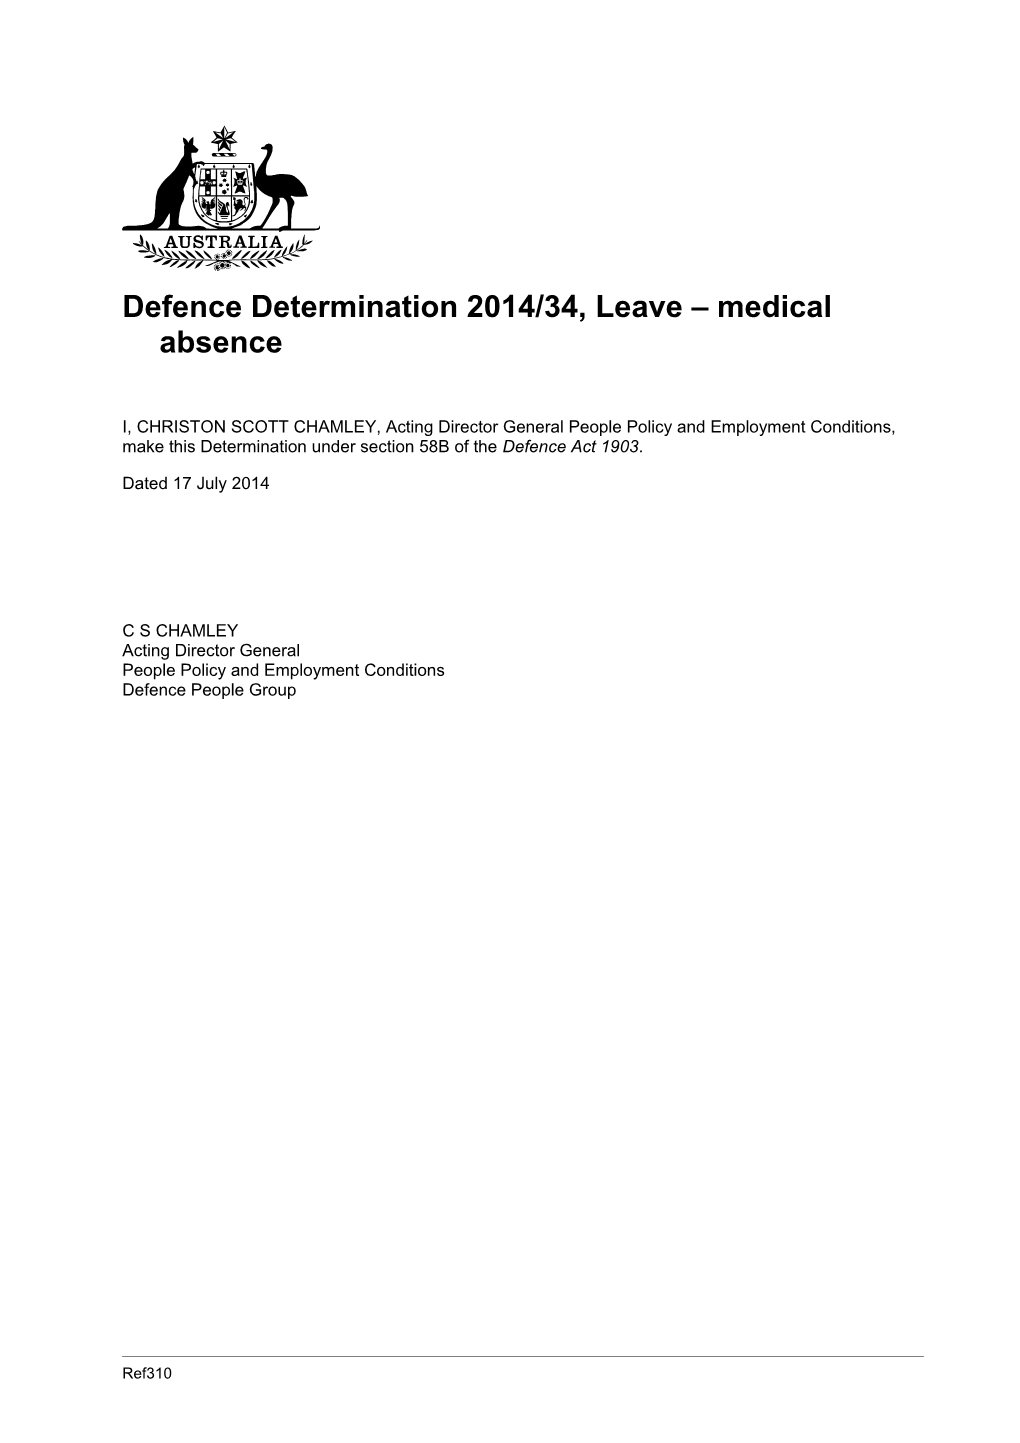 Defence Determination 2014/34, Leave Medical Absence